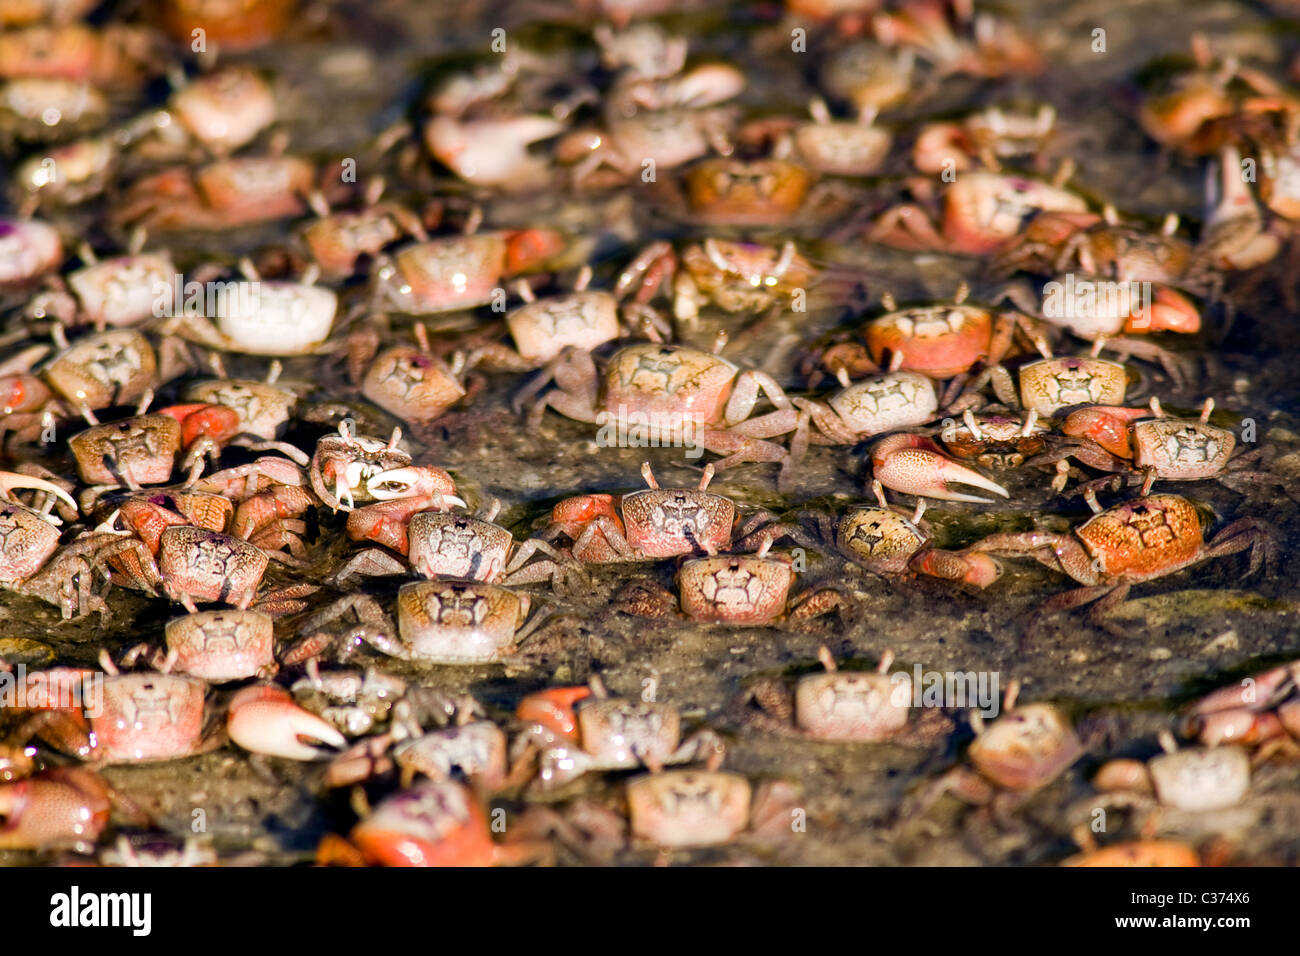 Large group of Fiddler Crabs - J.N. Ding Darling National Wildlife Refuge - Sanibel Island, Florida USA Stock Photo